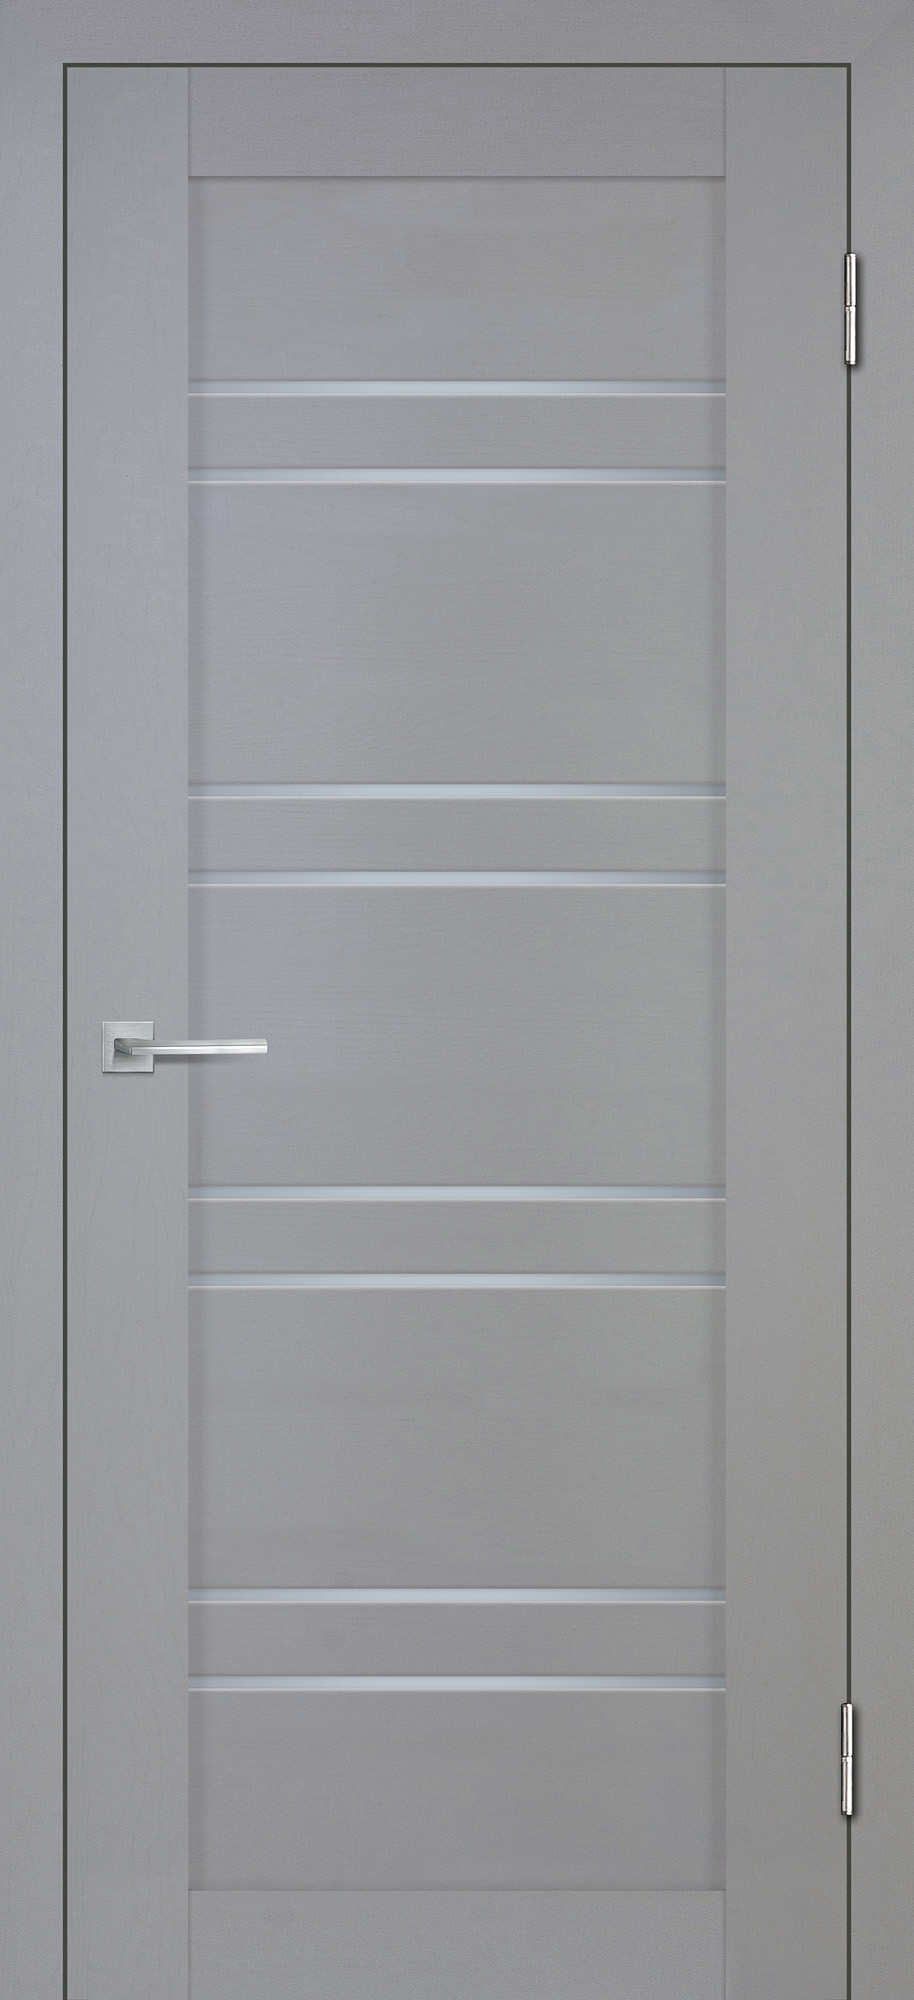 Двери ЭКОШПОН, ПВХ STABILE PORTE Деко-19 nanotex soft со стеклом серый тик размер 200 х 60 см. артикул F0000092414